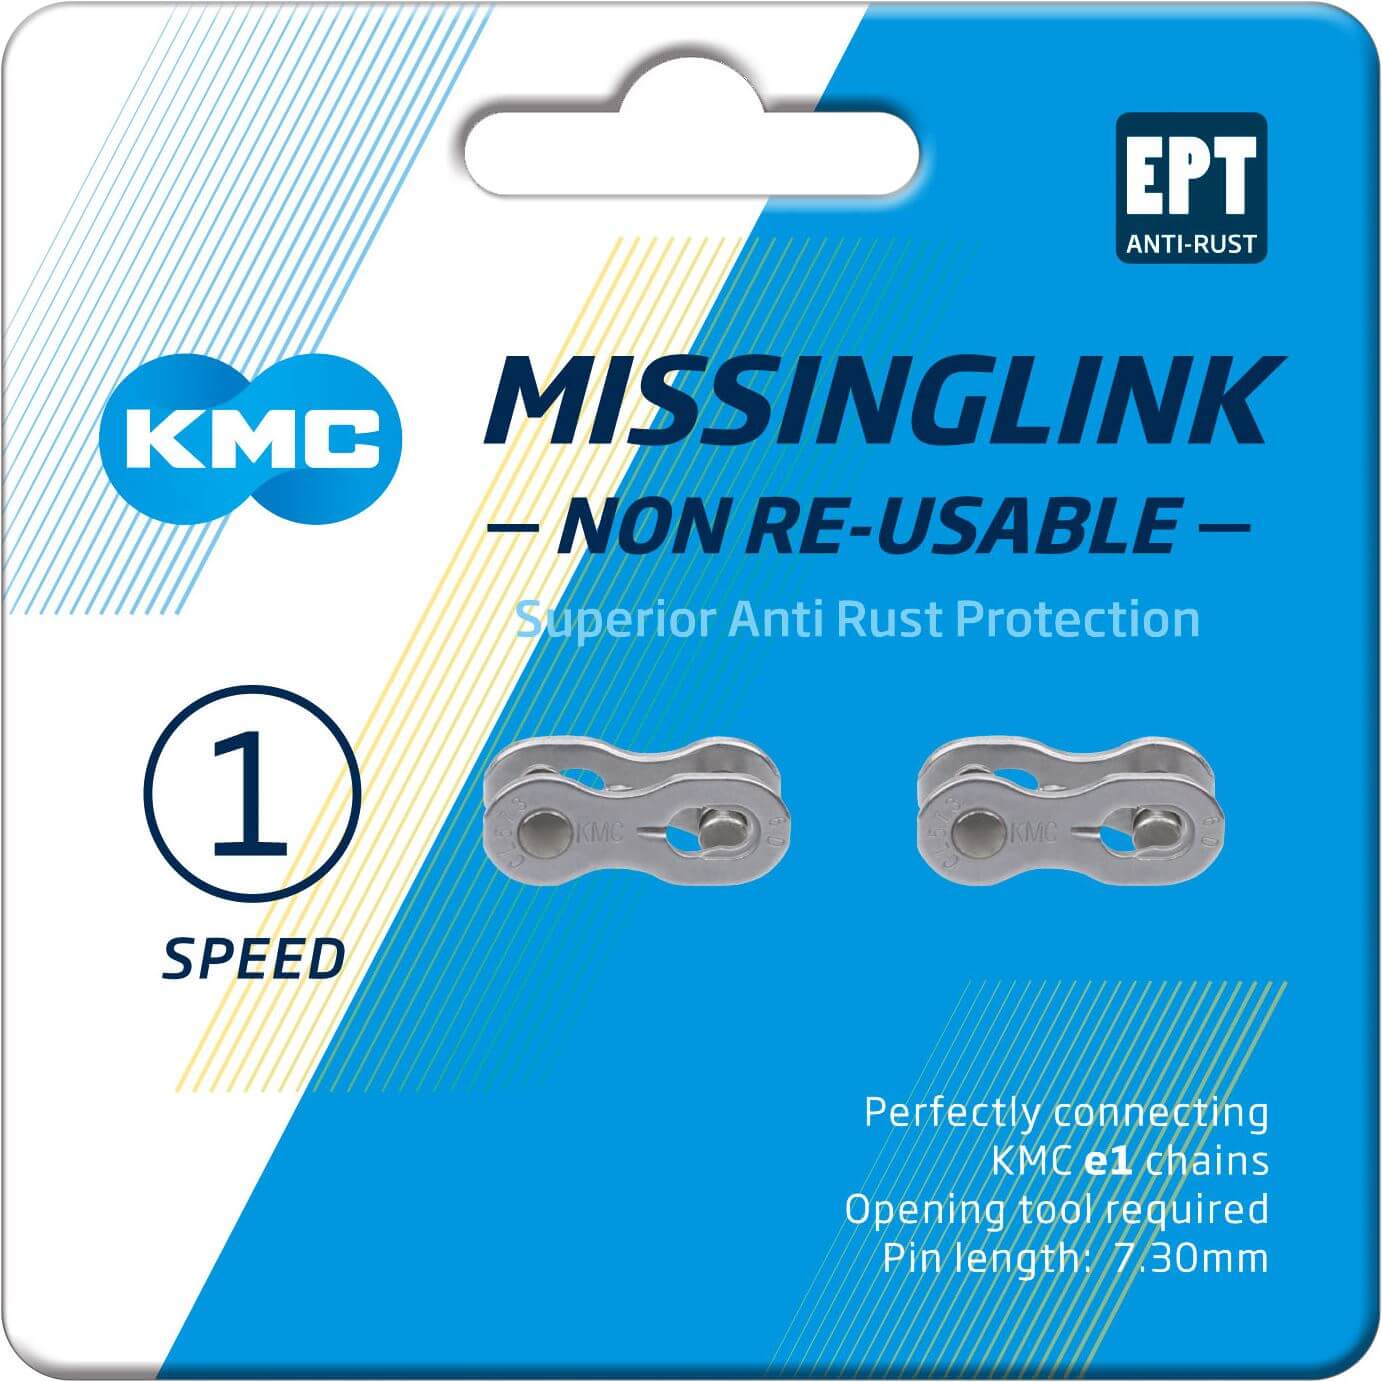 KMC missinglink E1 E8 3 32 EPT op kaart (2) E-bike